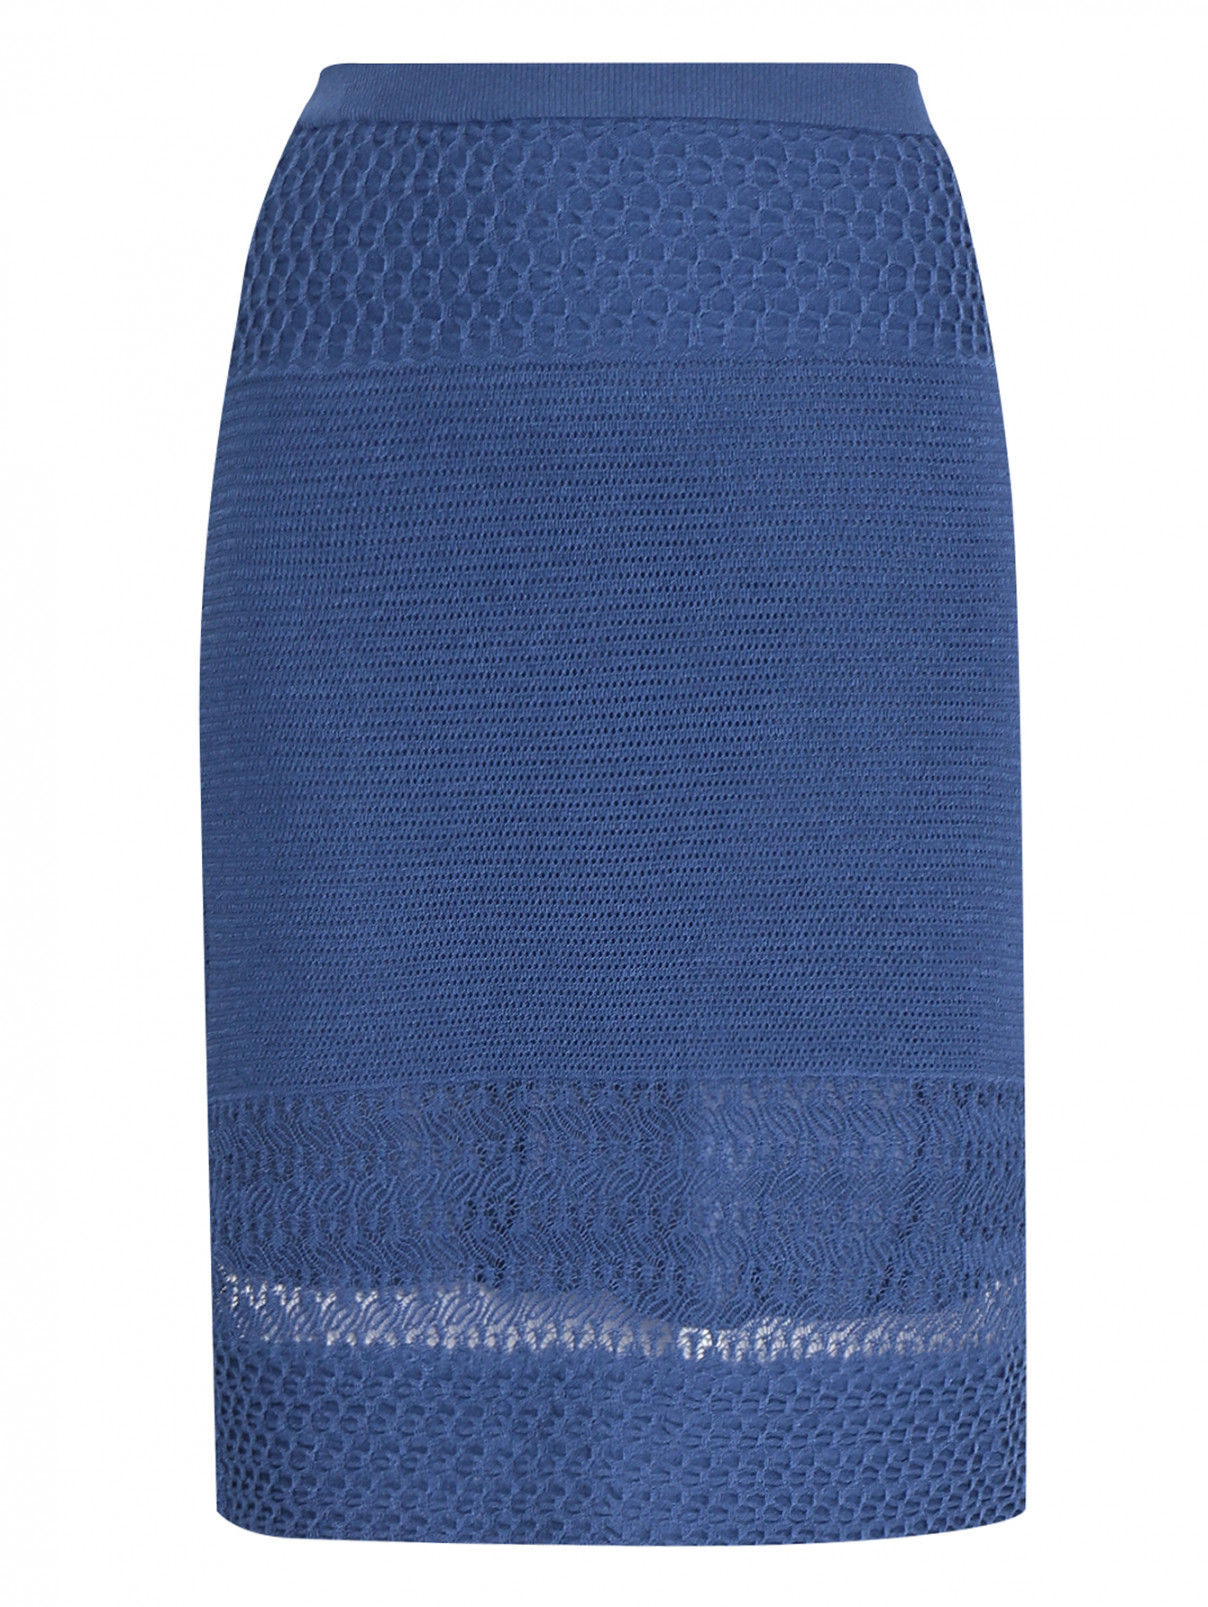 Трикотажная юбка ажурной вязки BOUTIQUE MOSCHINO  –  Общий вид  – Цвет:  Синий